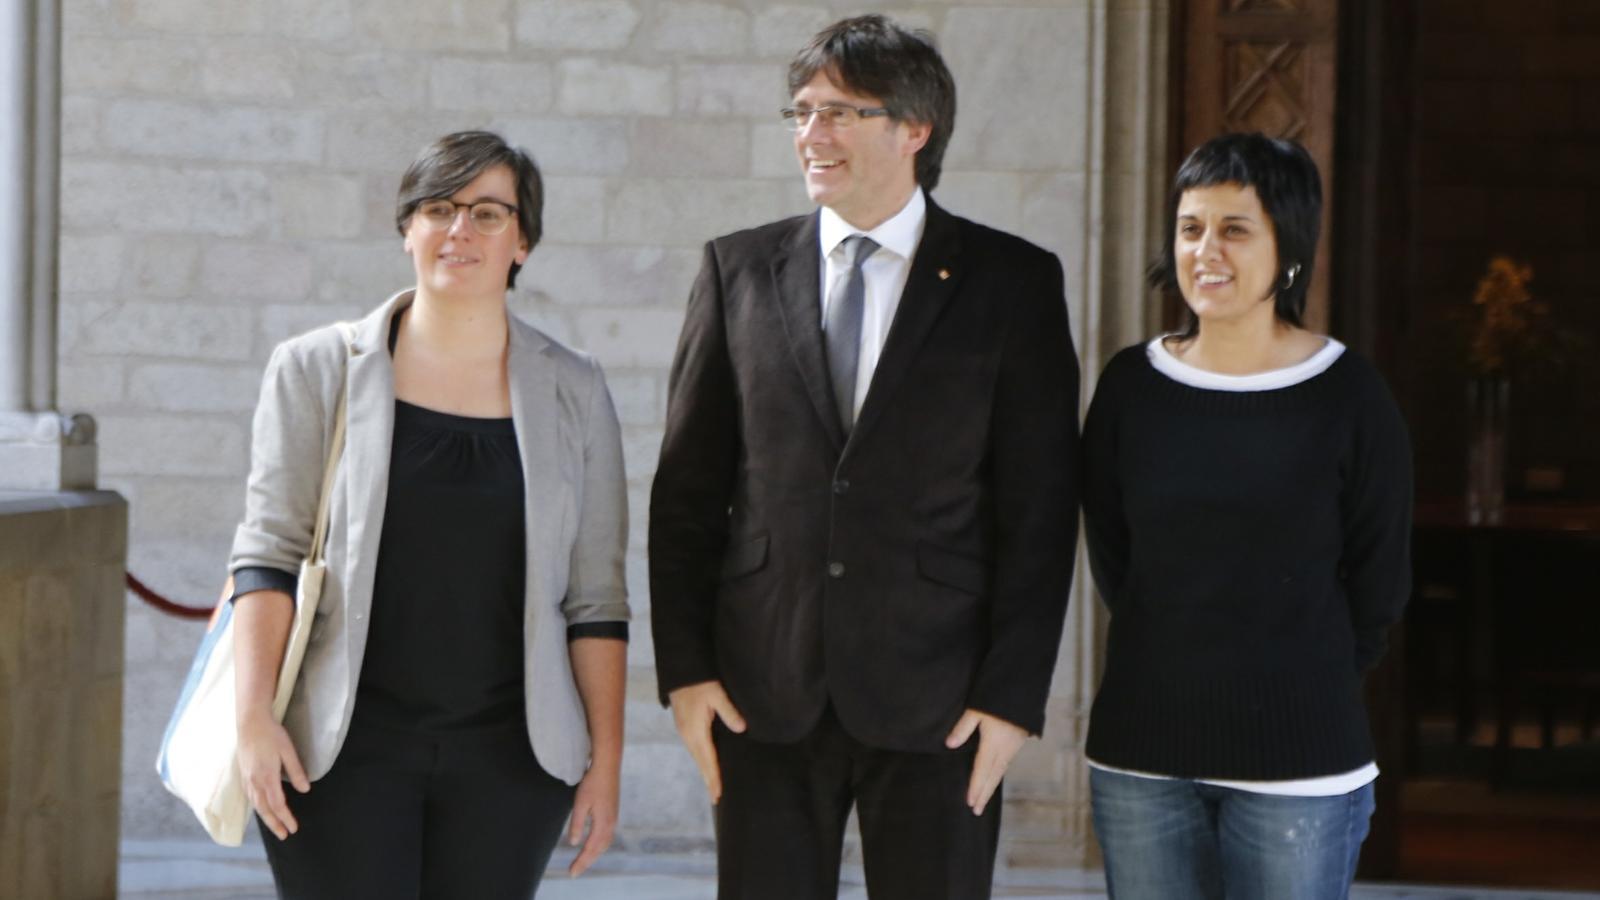 El president de la Generalitat, Carles Puigdemont, s'ha reunit amb les diputades de la CUP Mireia Boya i Anna Gabriel / FERRAN FORNÉ